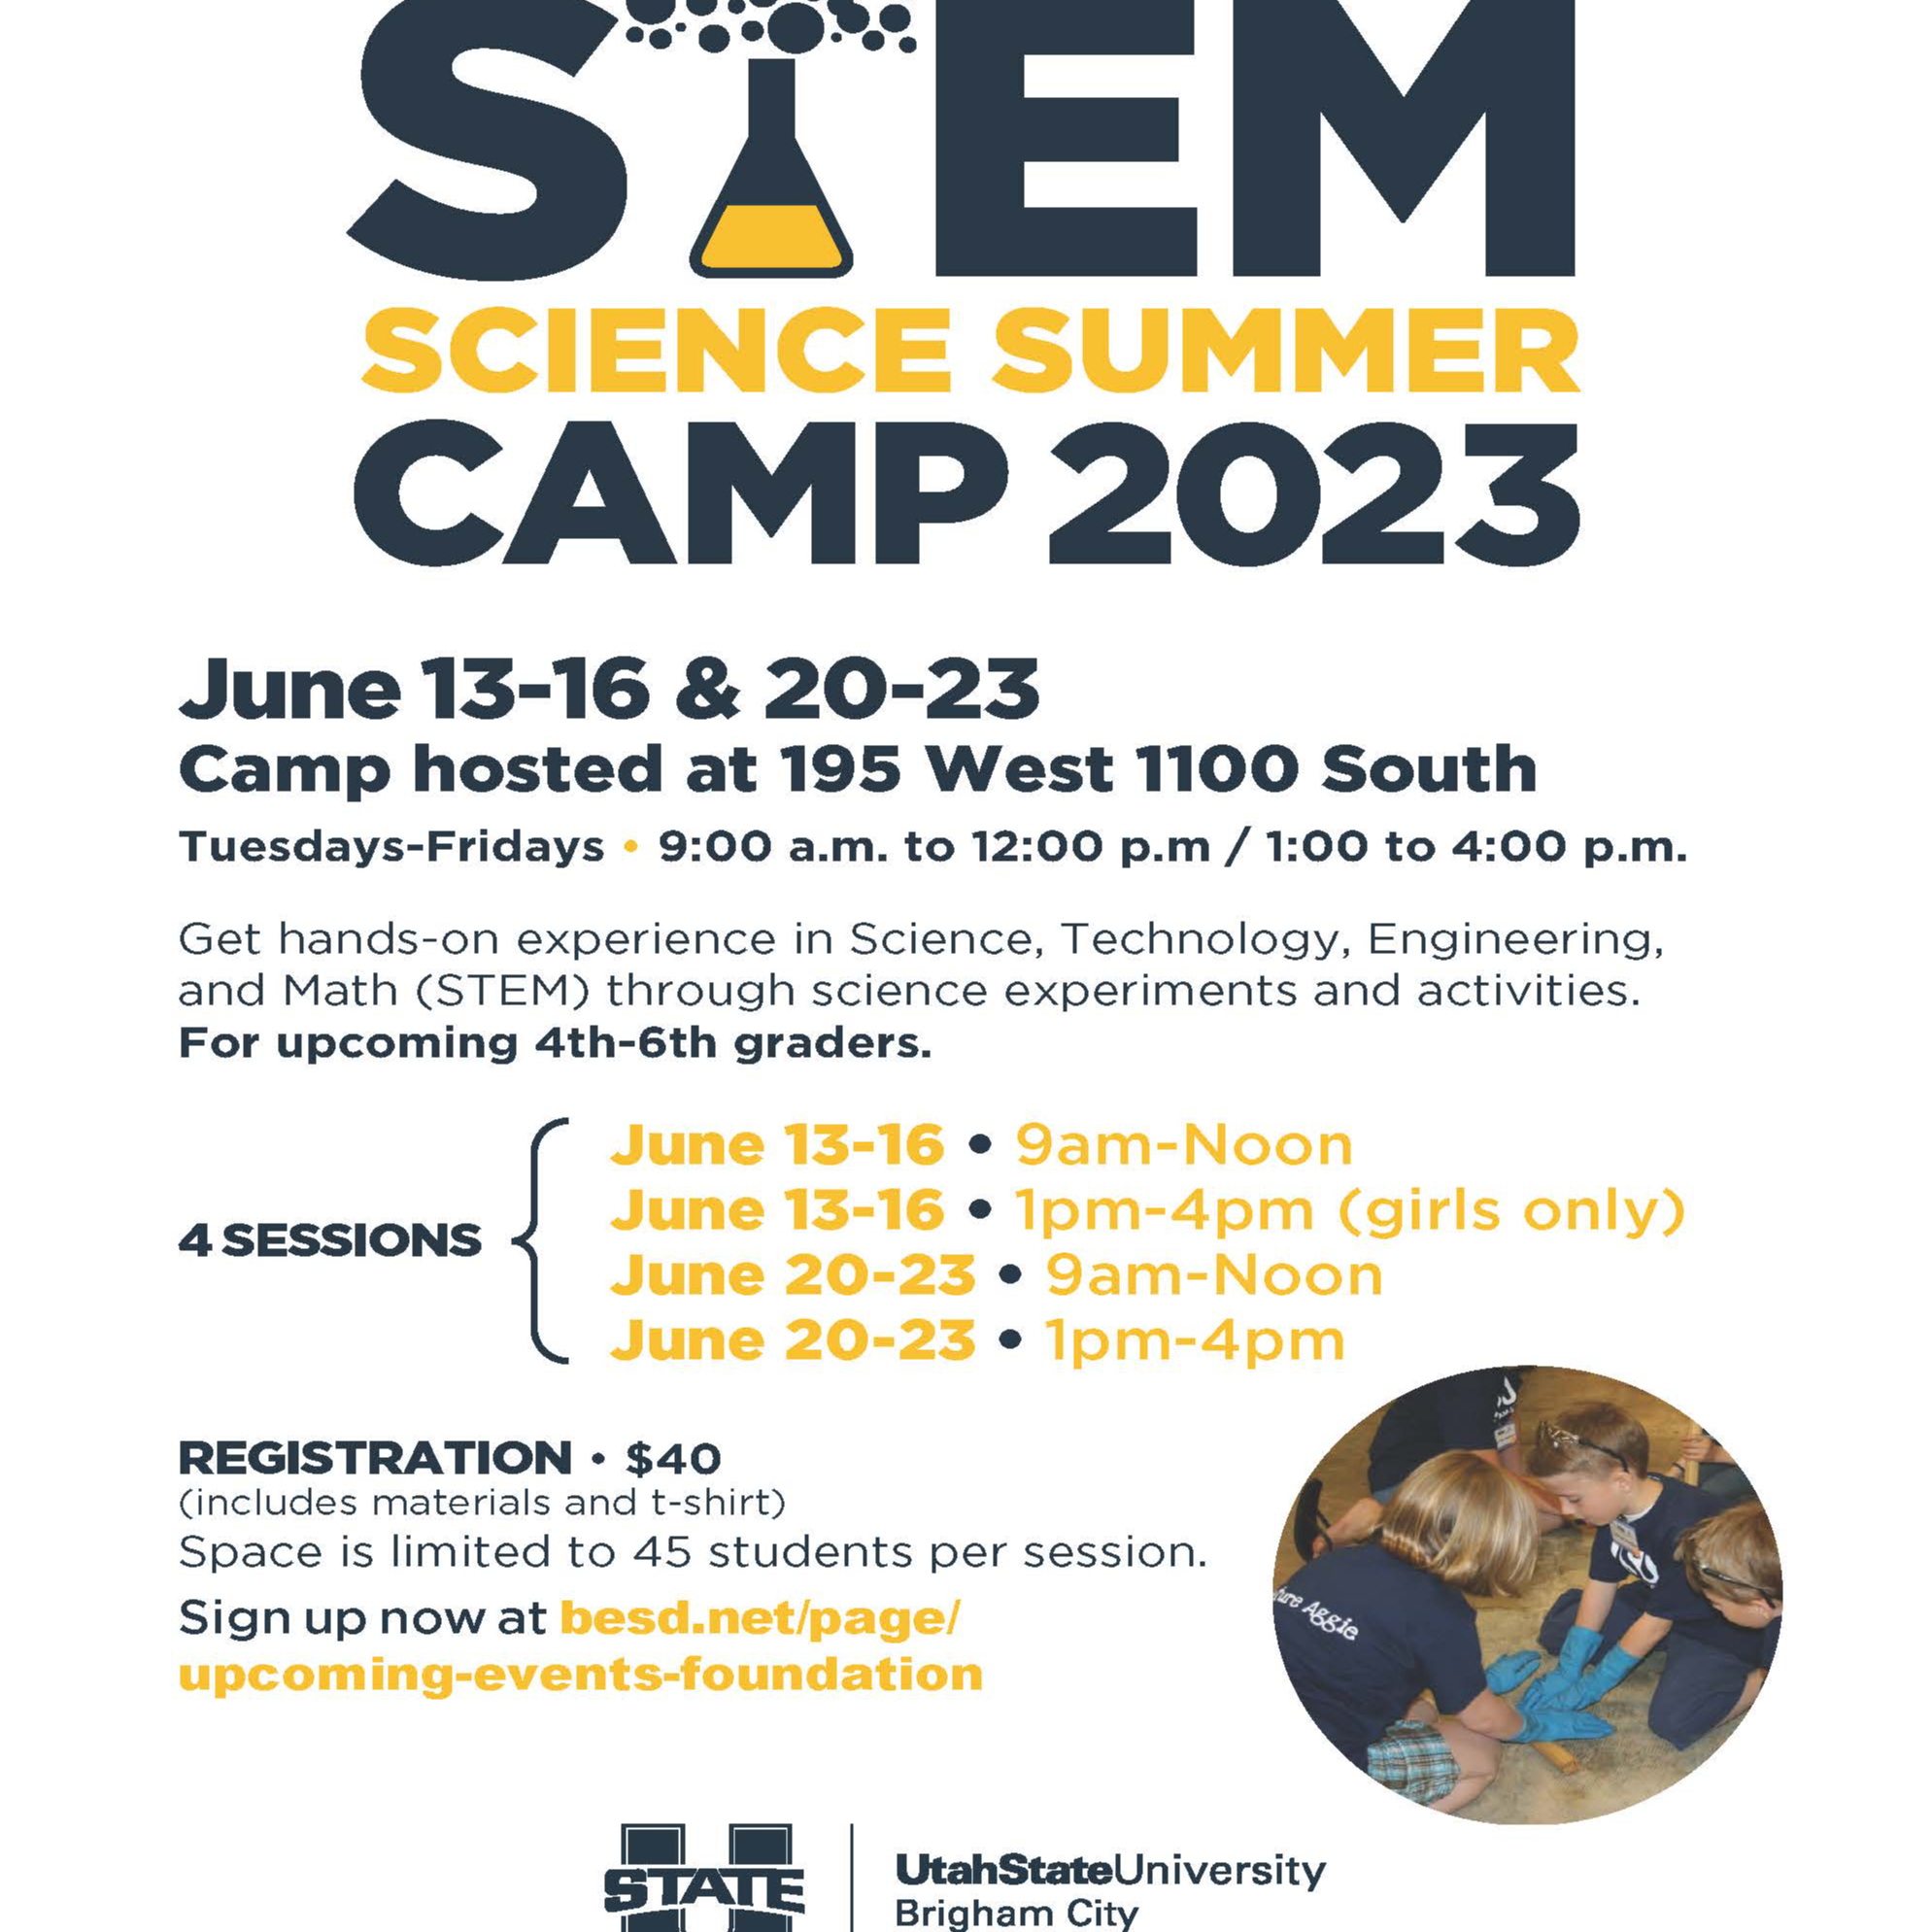 STEM Science Summer Camp 2023 Flyer